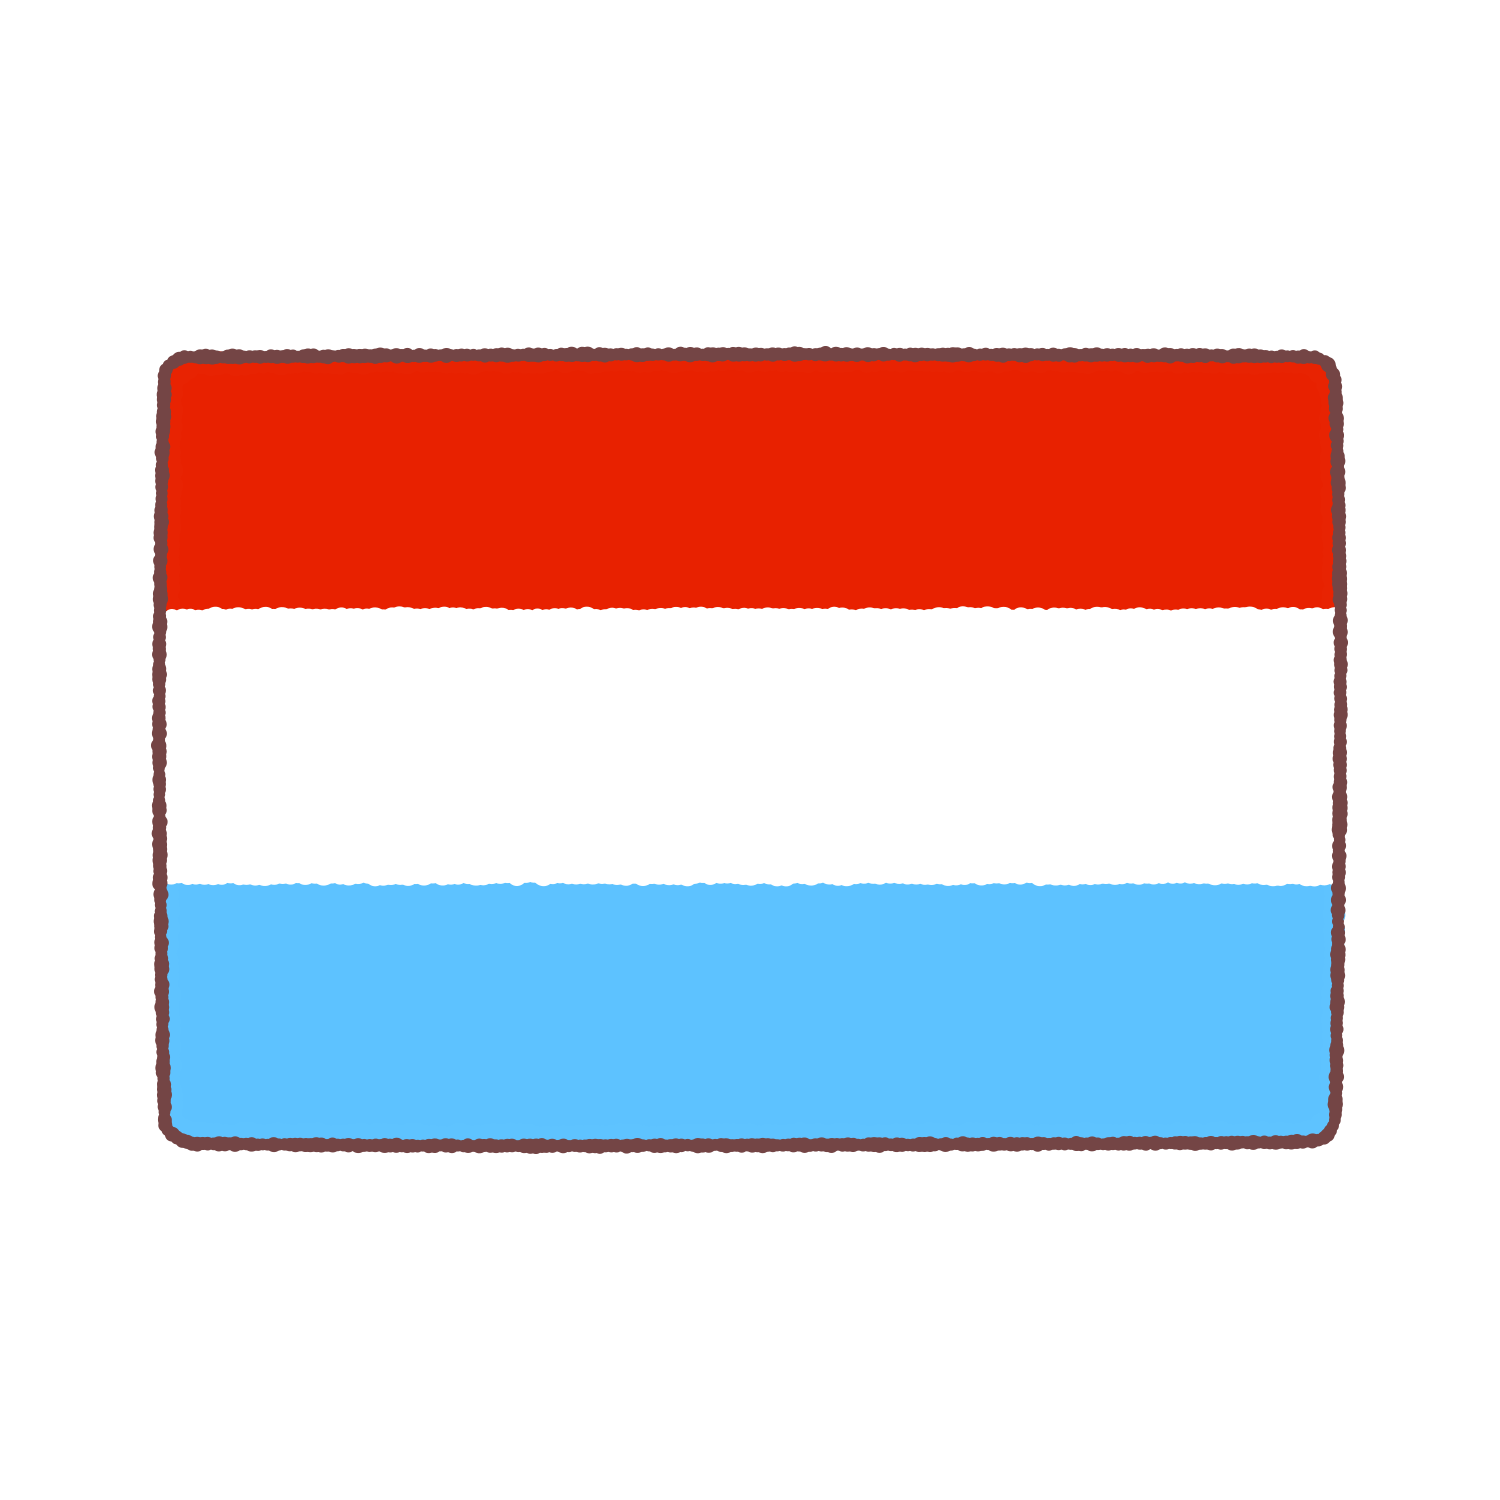 ルクセンブルグ国旗のイラスト